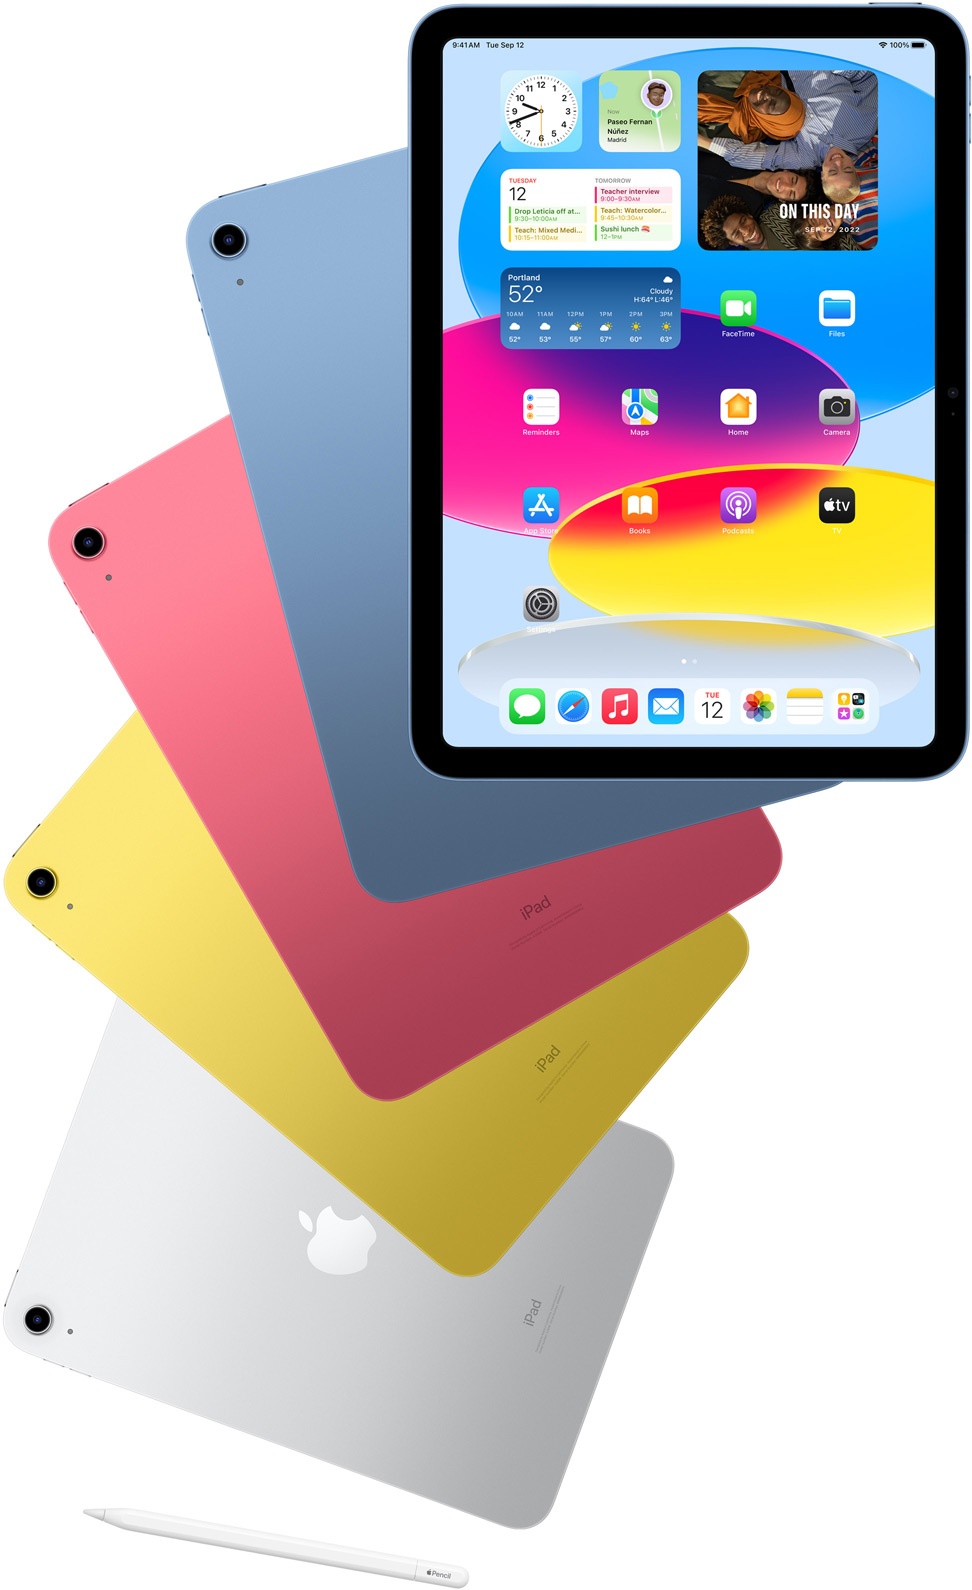 iPad sedd framifrån med hemskärmen, bakom den visas iPad-enheter i blått, rosa, gult och silver sedda bakifrån. Apple Pencil som ligger bredvid de ordnade iPad-modellerna.